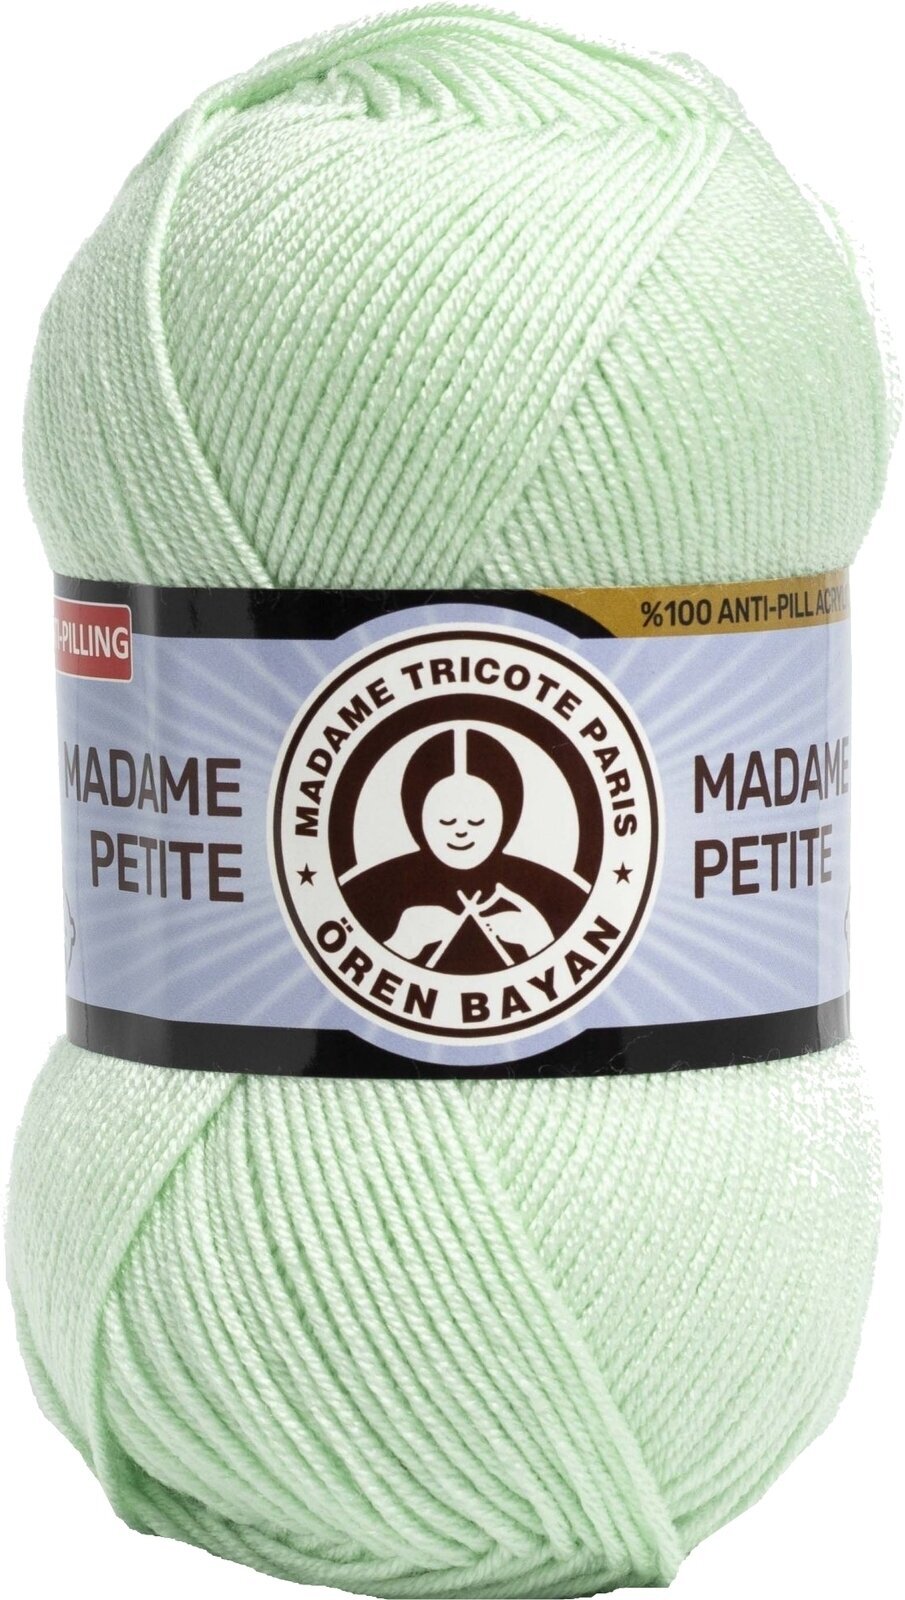 Νήμα Πλεξίματος Madame Tricote Paris Madame Petite 3848 90 Νήμα Πλεξίματος